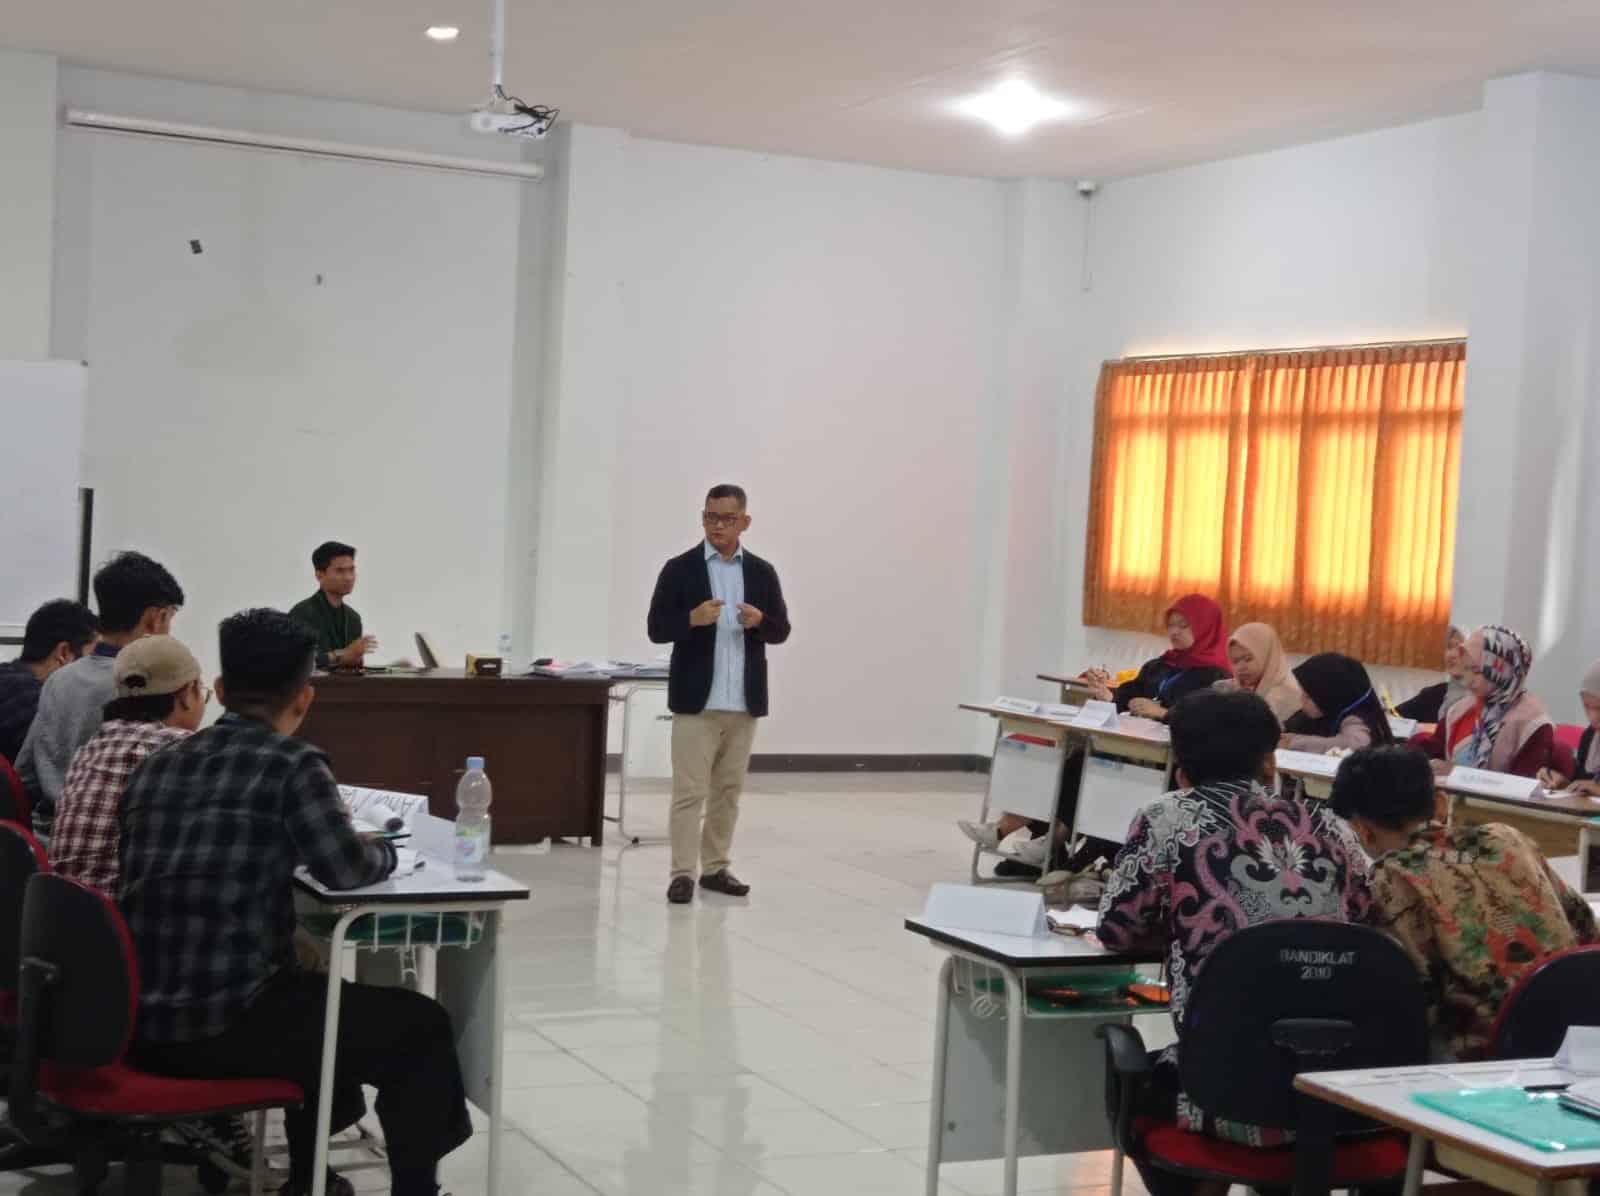 Intermediate training dengan tema "Peran dan Fungsi Pemuda Dalam Upaya Mendukung Ekonomi Berkelanjutan" di Gedung BPSDM Provinsi Kalimantan Barat. (Foto: Istimewa)